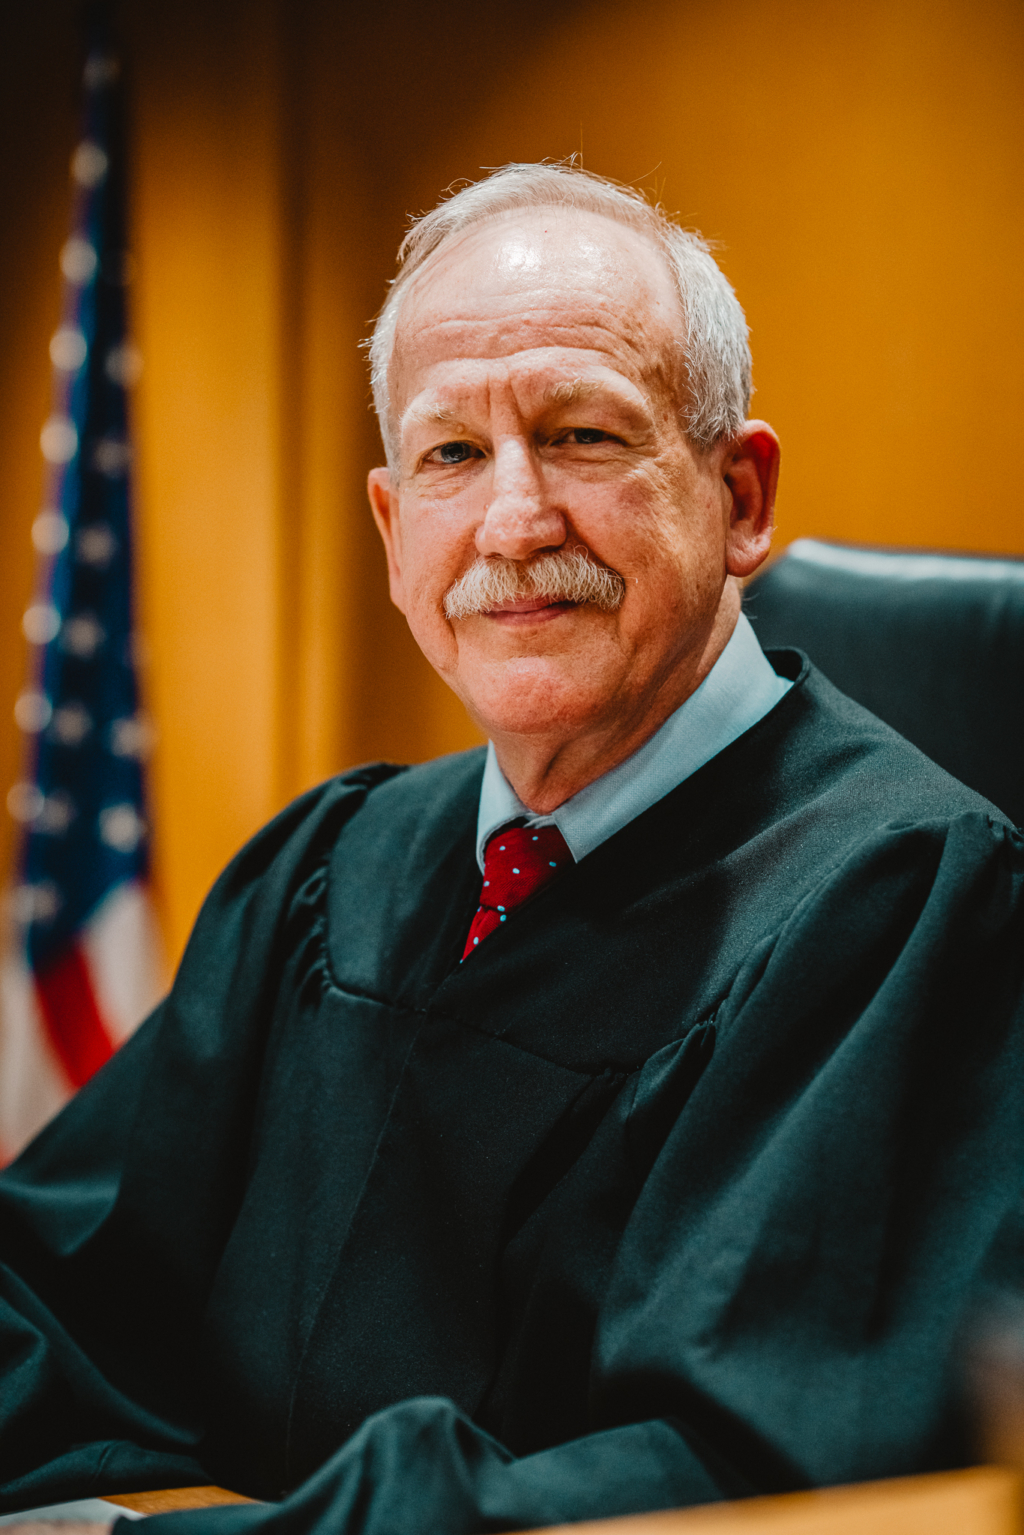 Judge Downer